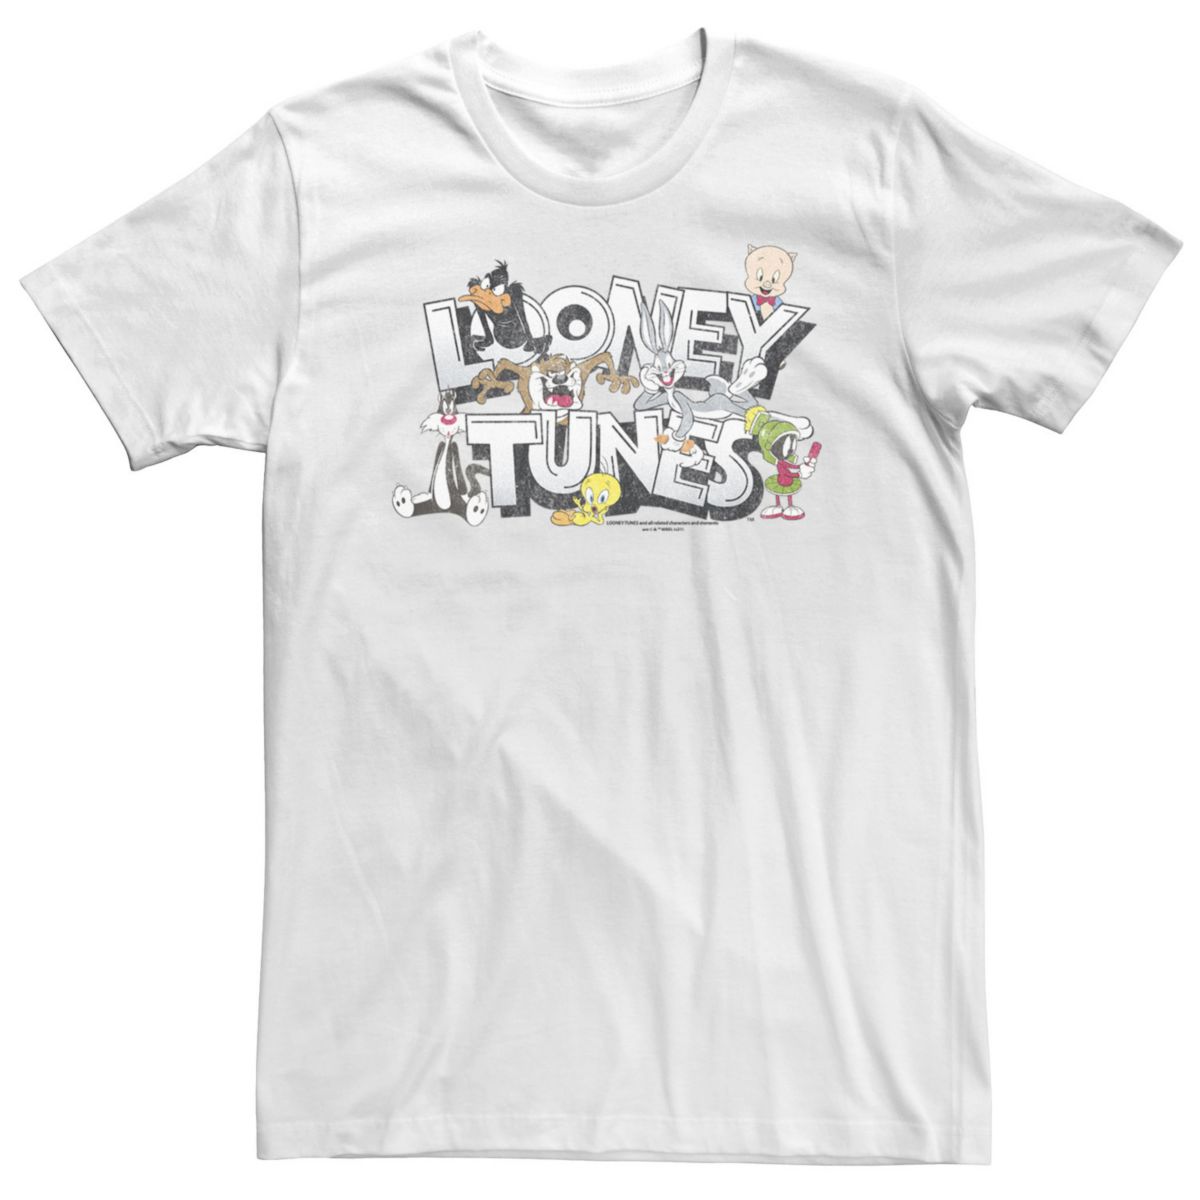 Большой &amp; Высокая футболка с логотипом персонажа Looney Tunes Looney Tunes